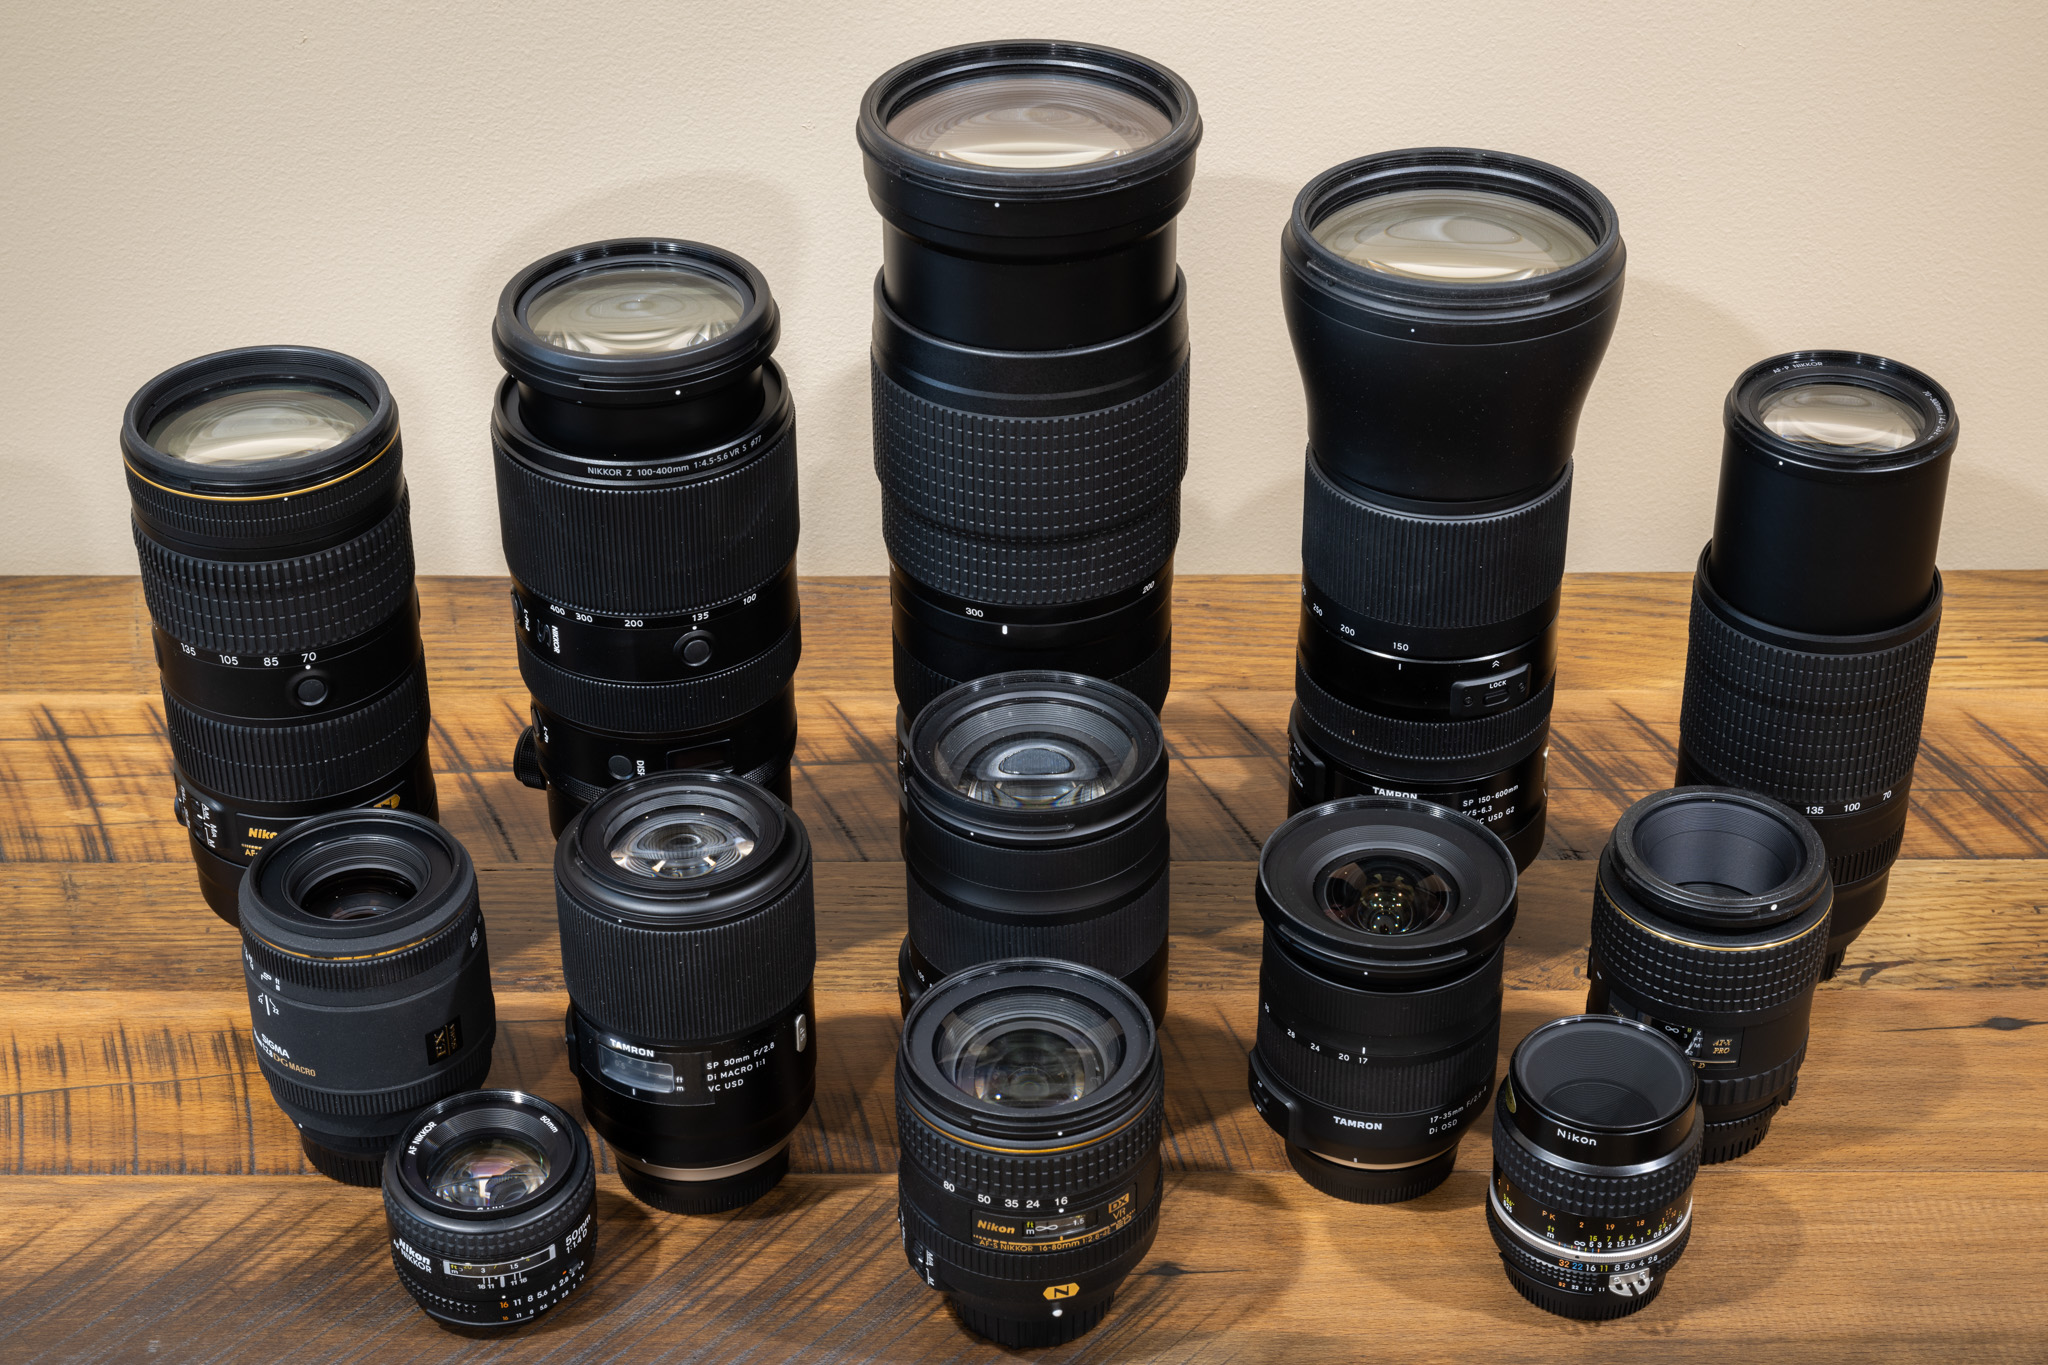 dat is alles medeleerling Resistent What Camera Lens Should I Buy? A Beginner's Guide